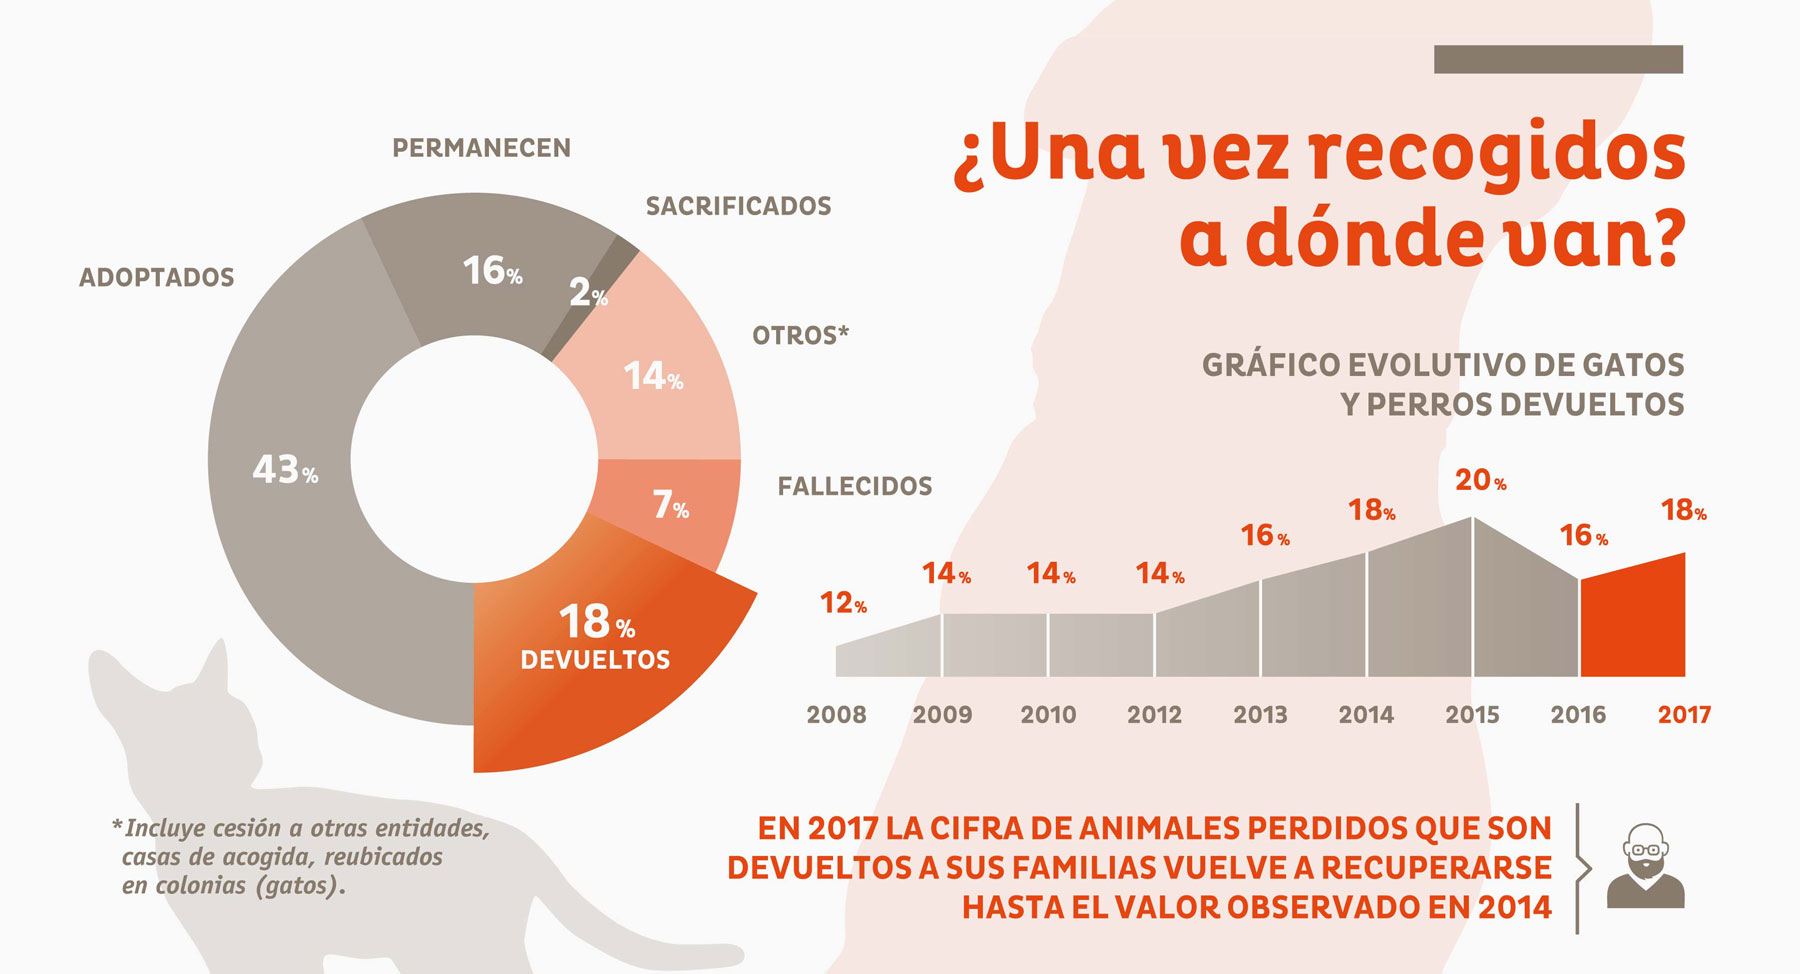 Resultados del Estudio del abandono en España 2018” - Fundación Affinity